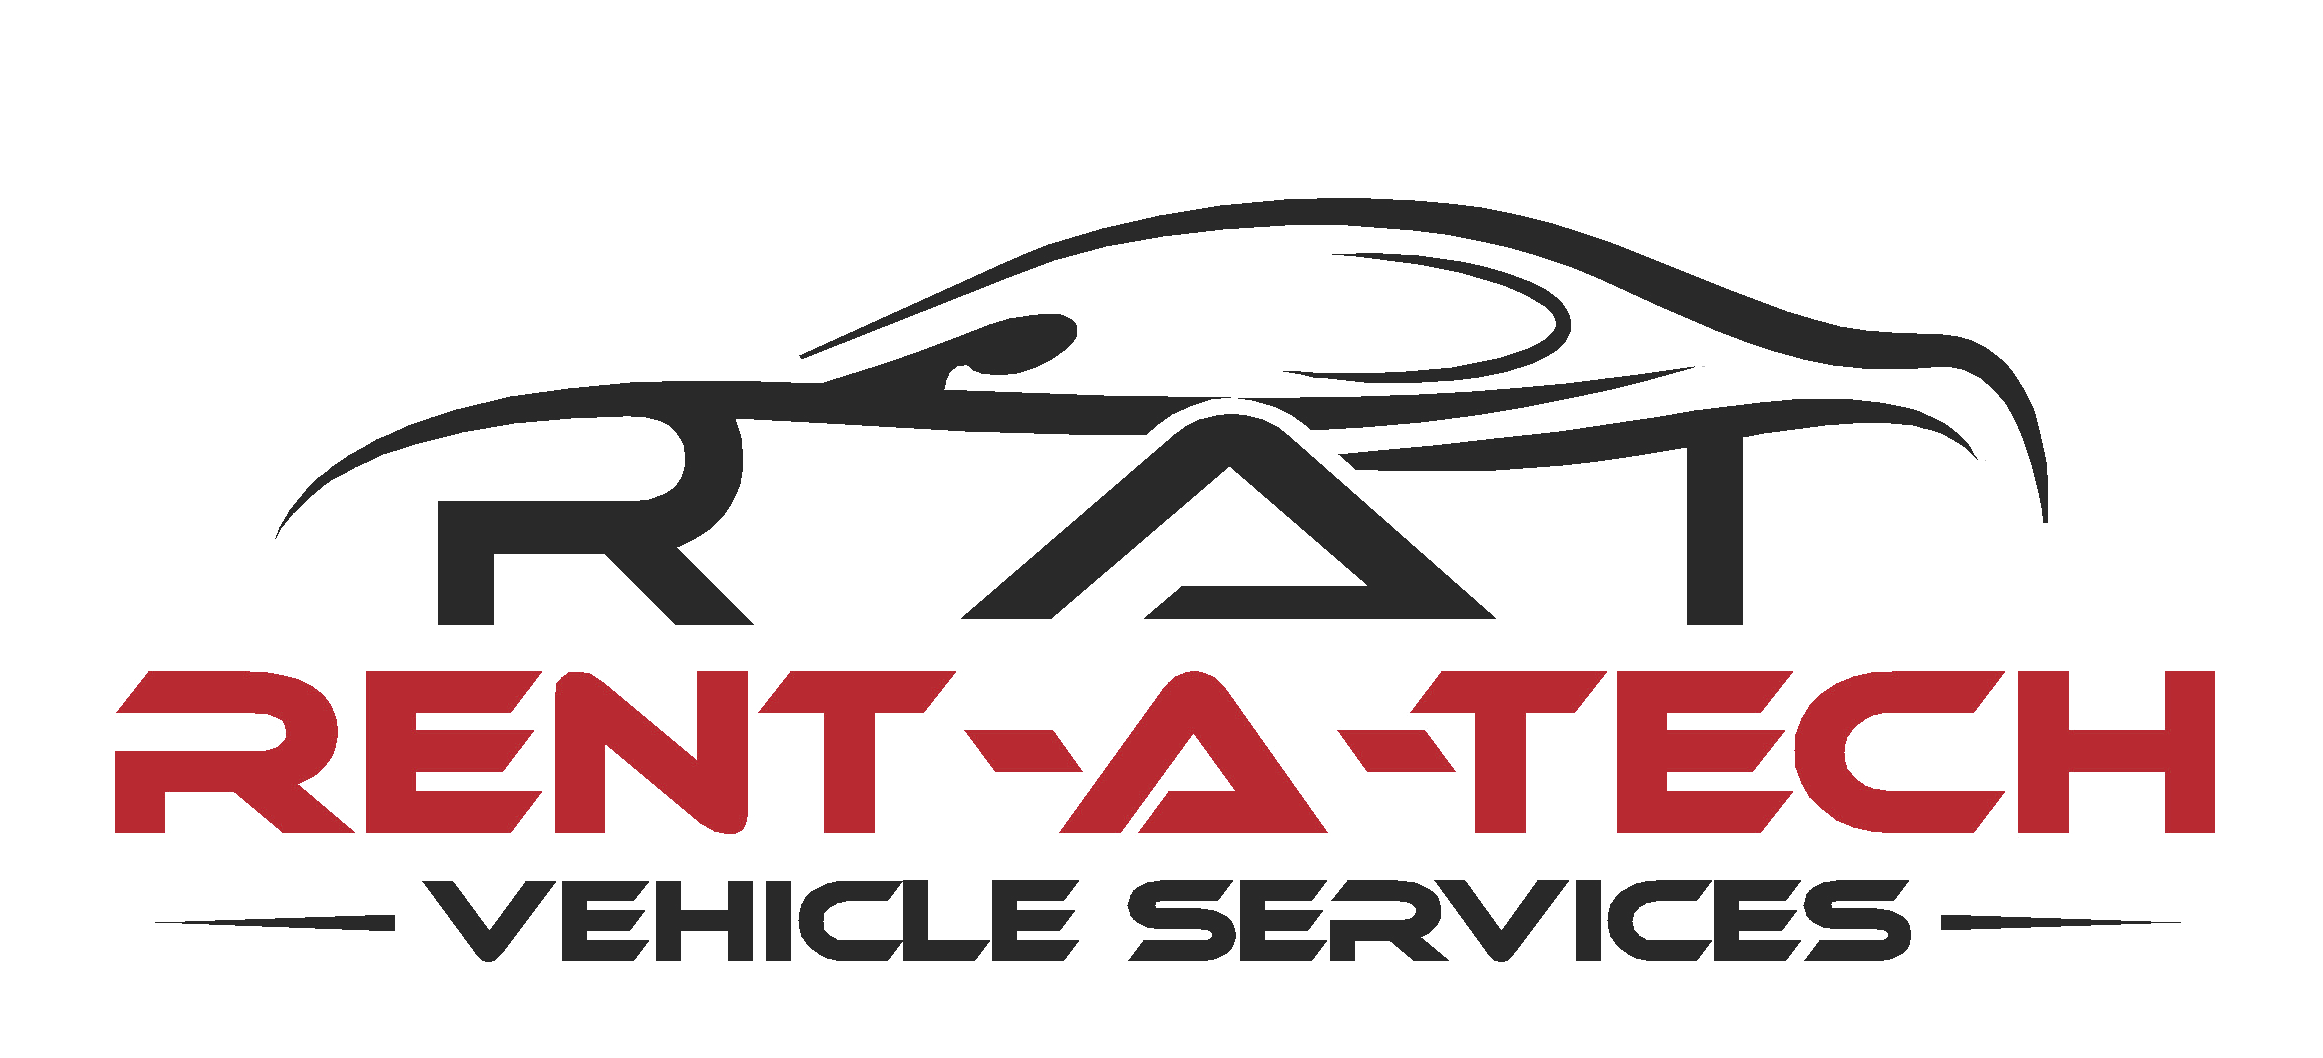 Rent a Tech Vehicle Services